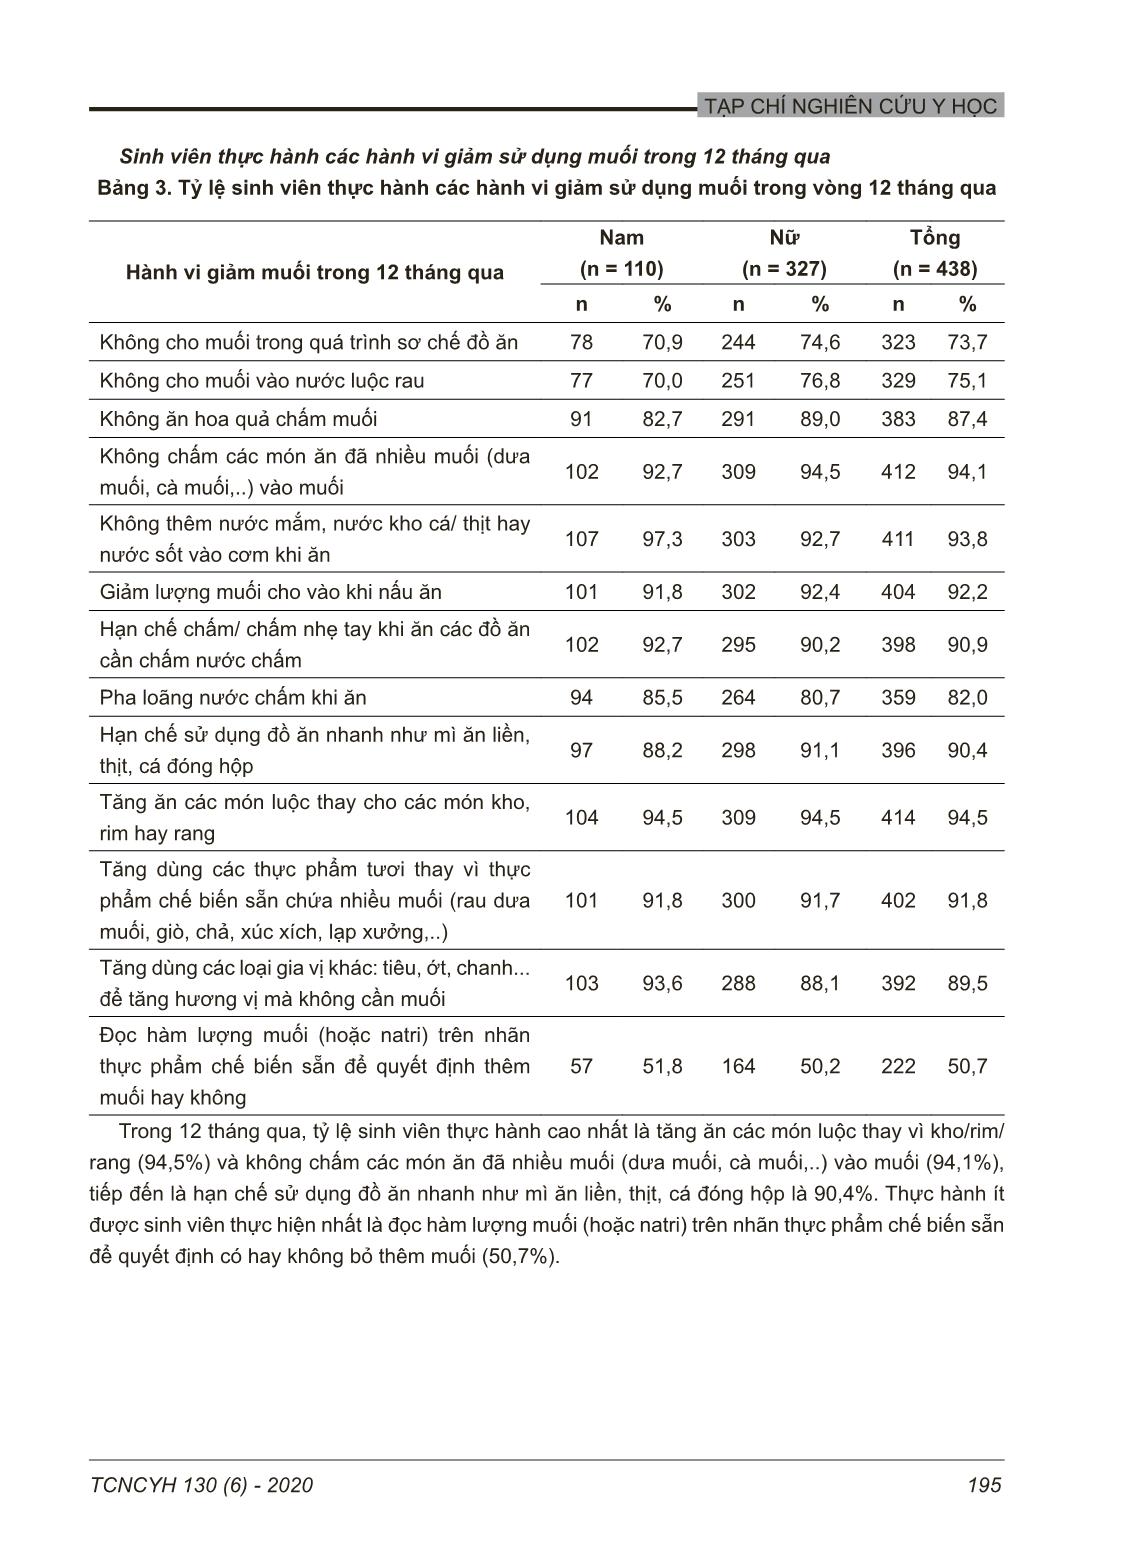 Hành vi giảm sử dụng muối của sinh viên Đại học Y Hà Nội năm 2020 trang 5